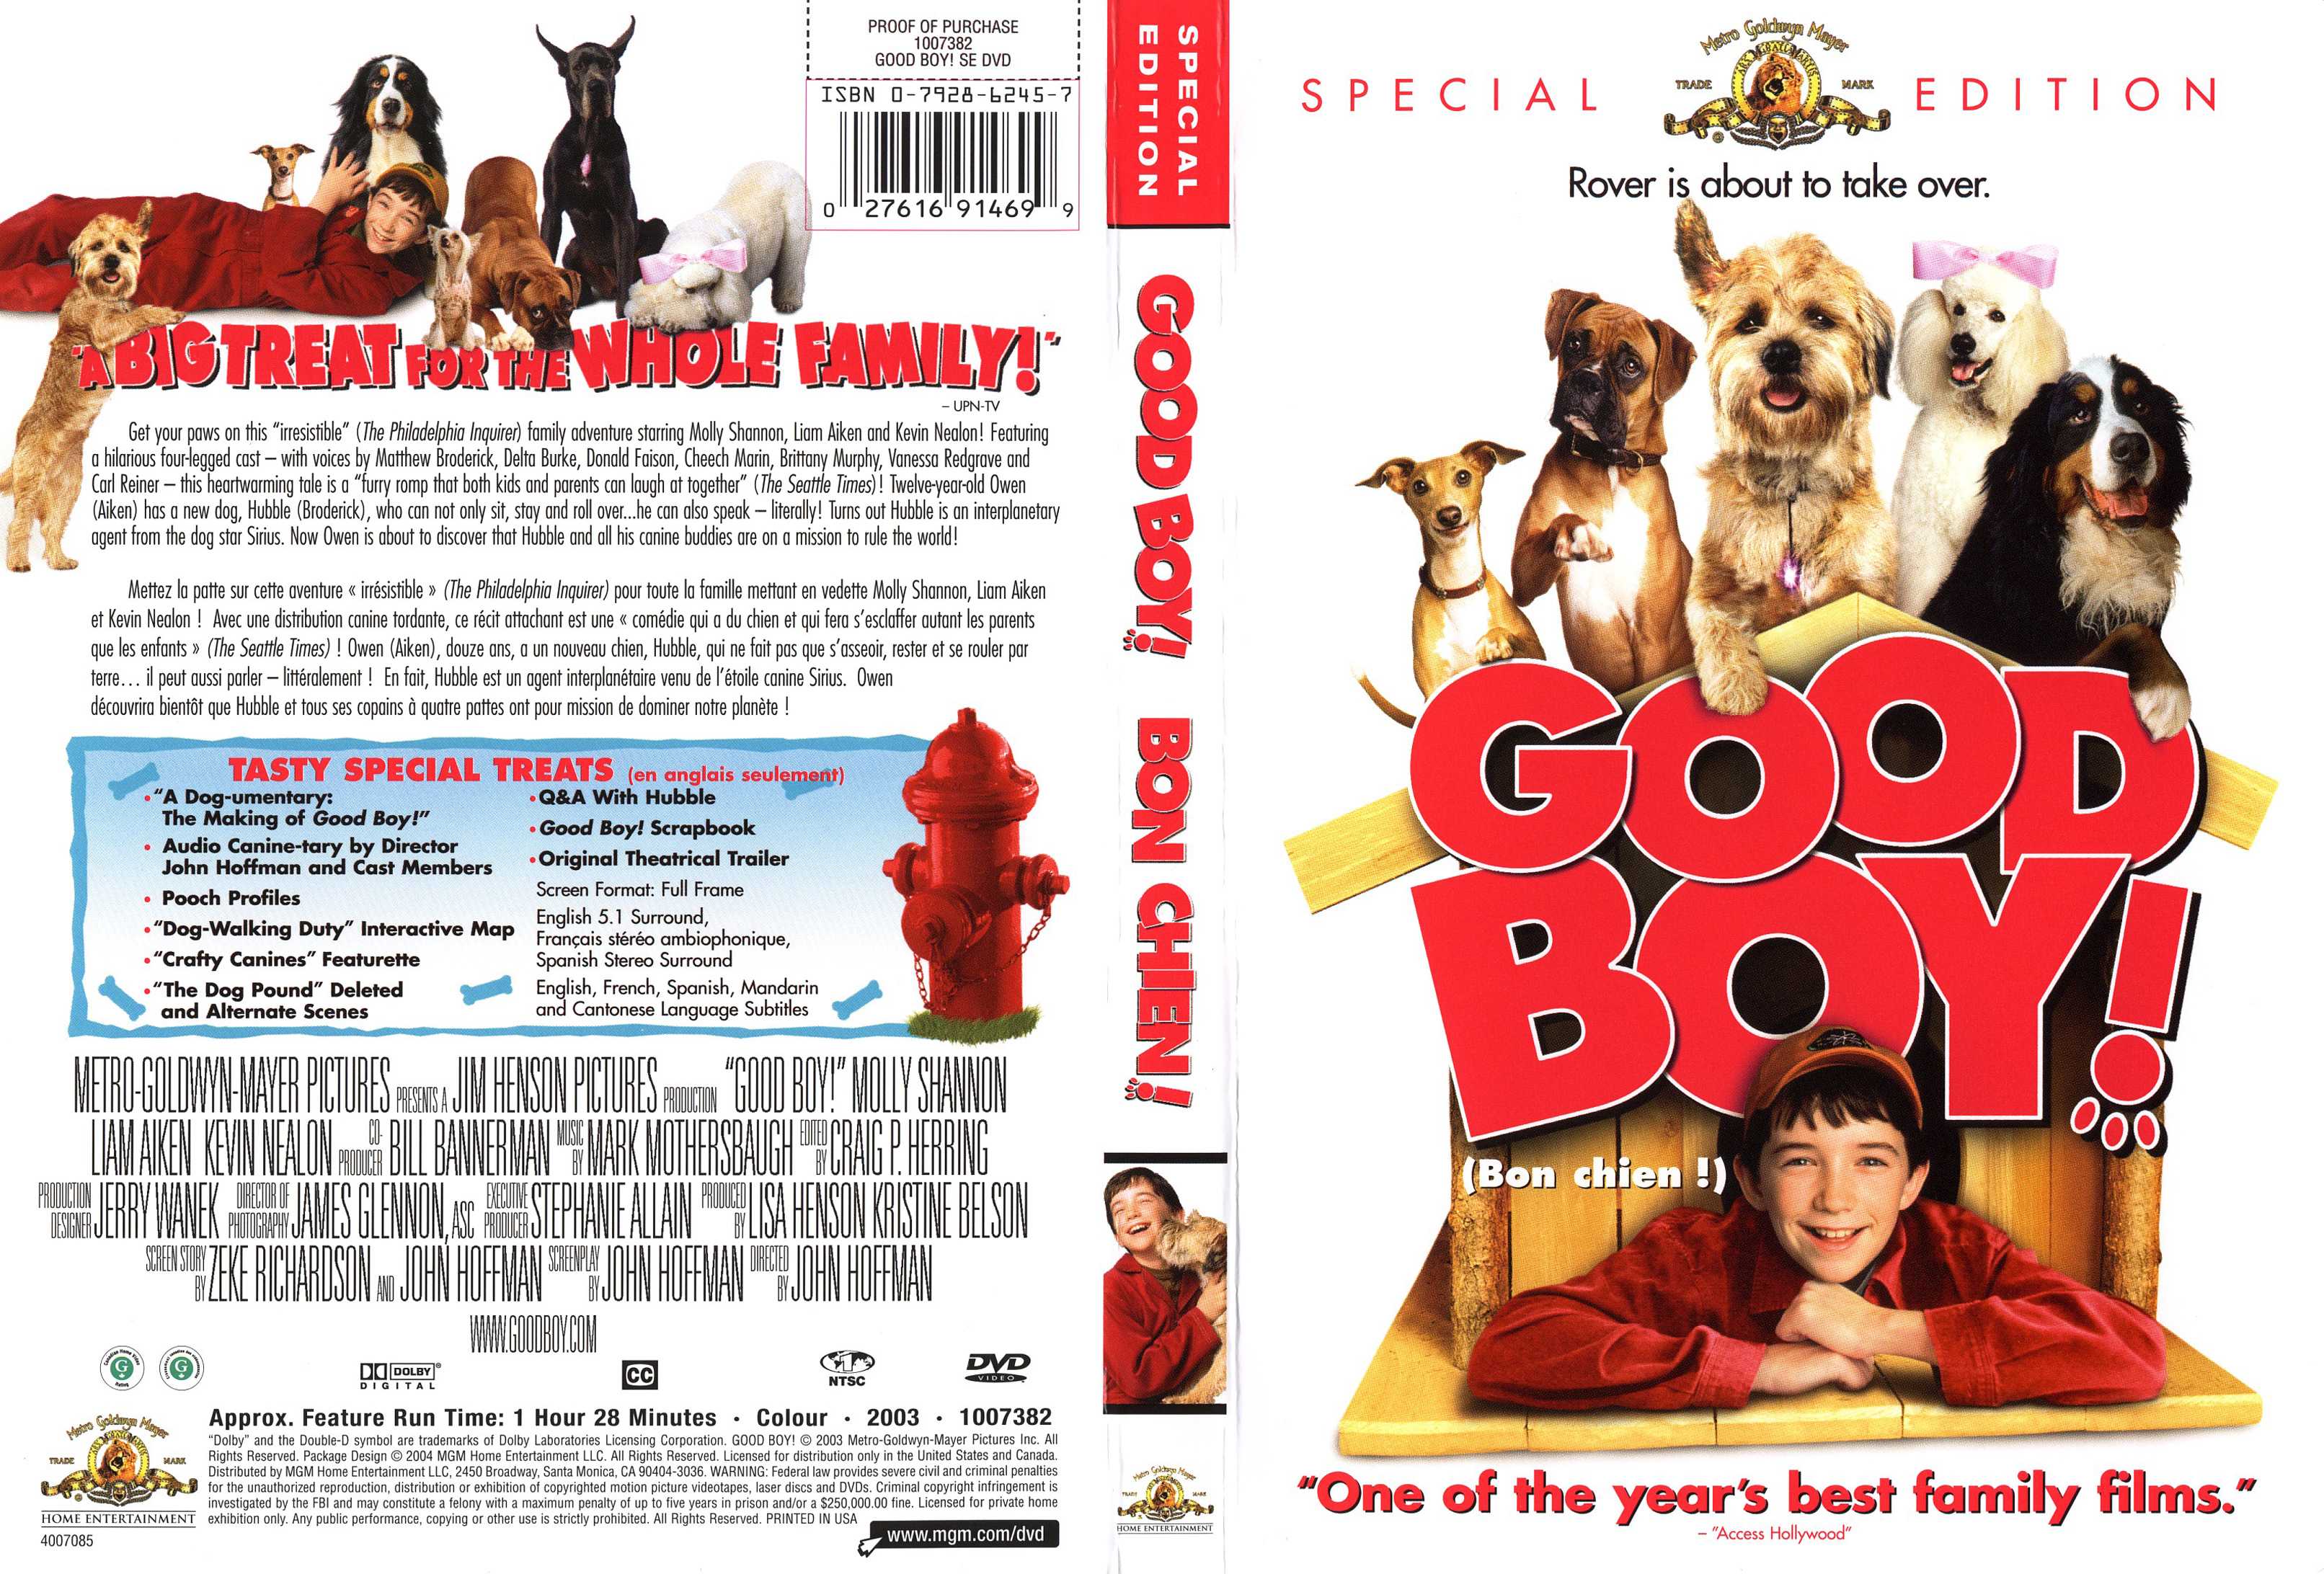 Jaquette DVD Good boy